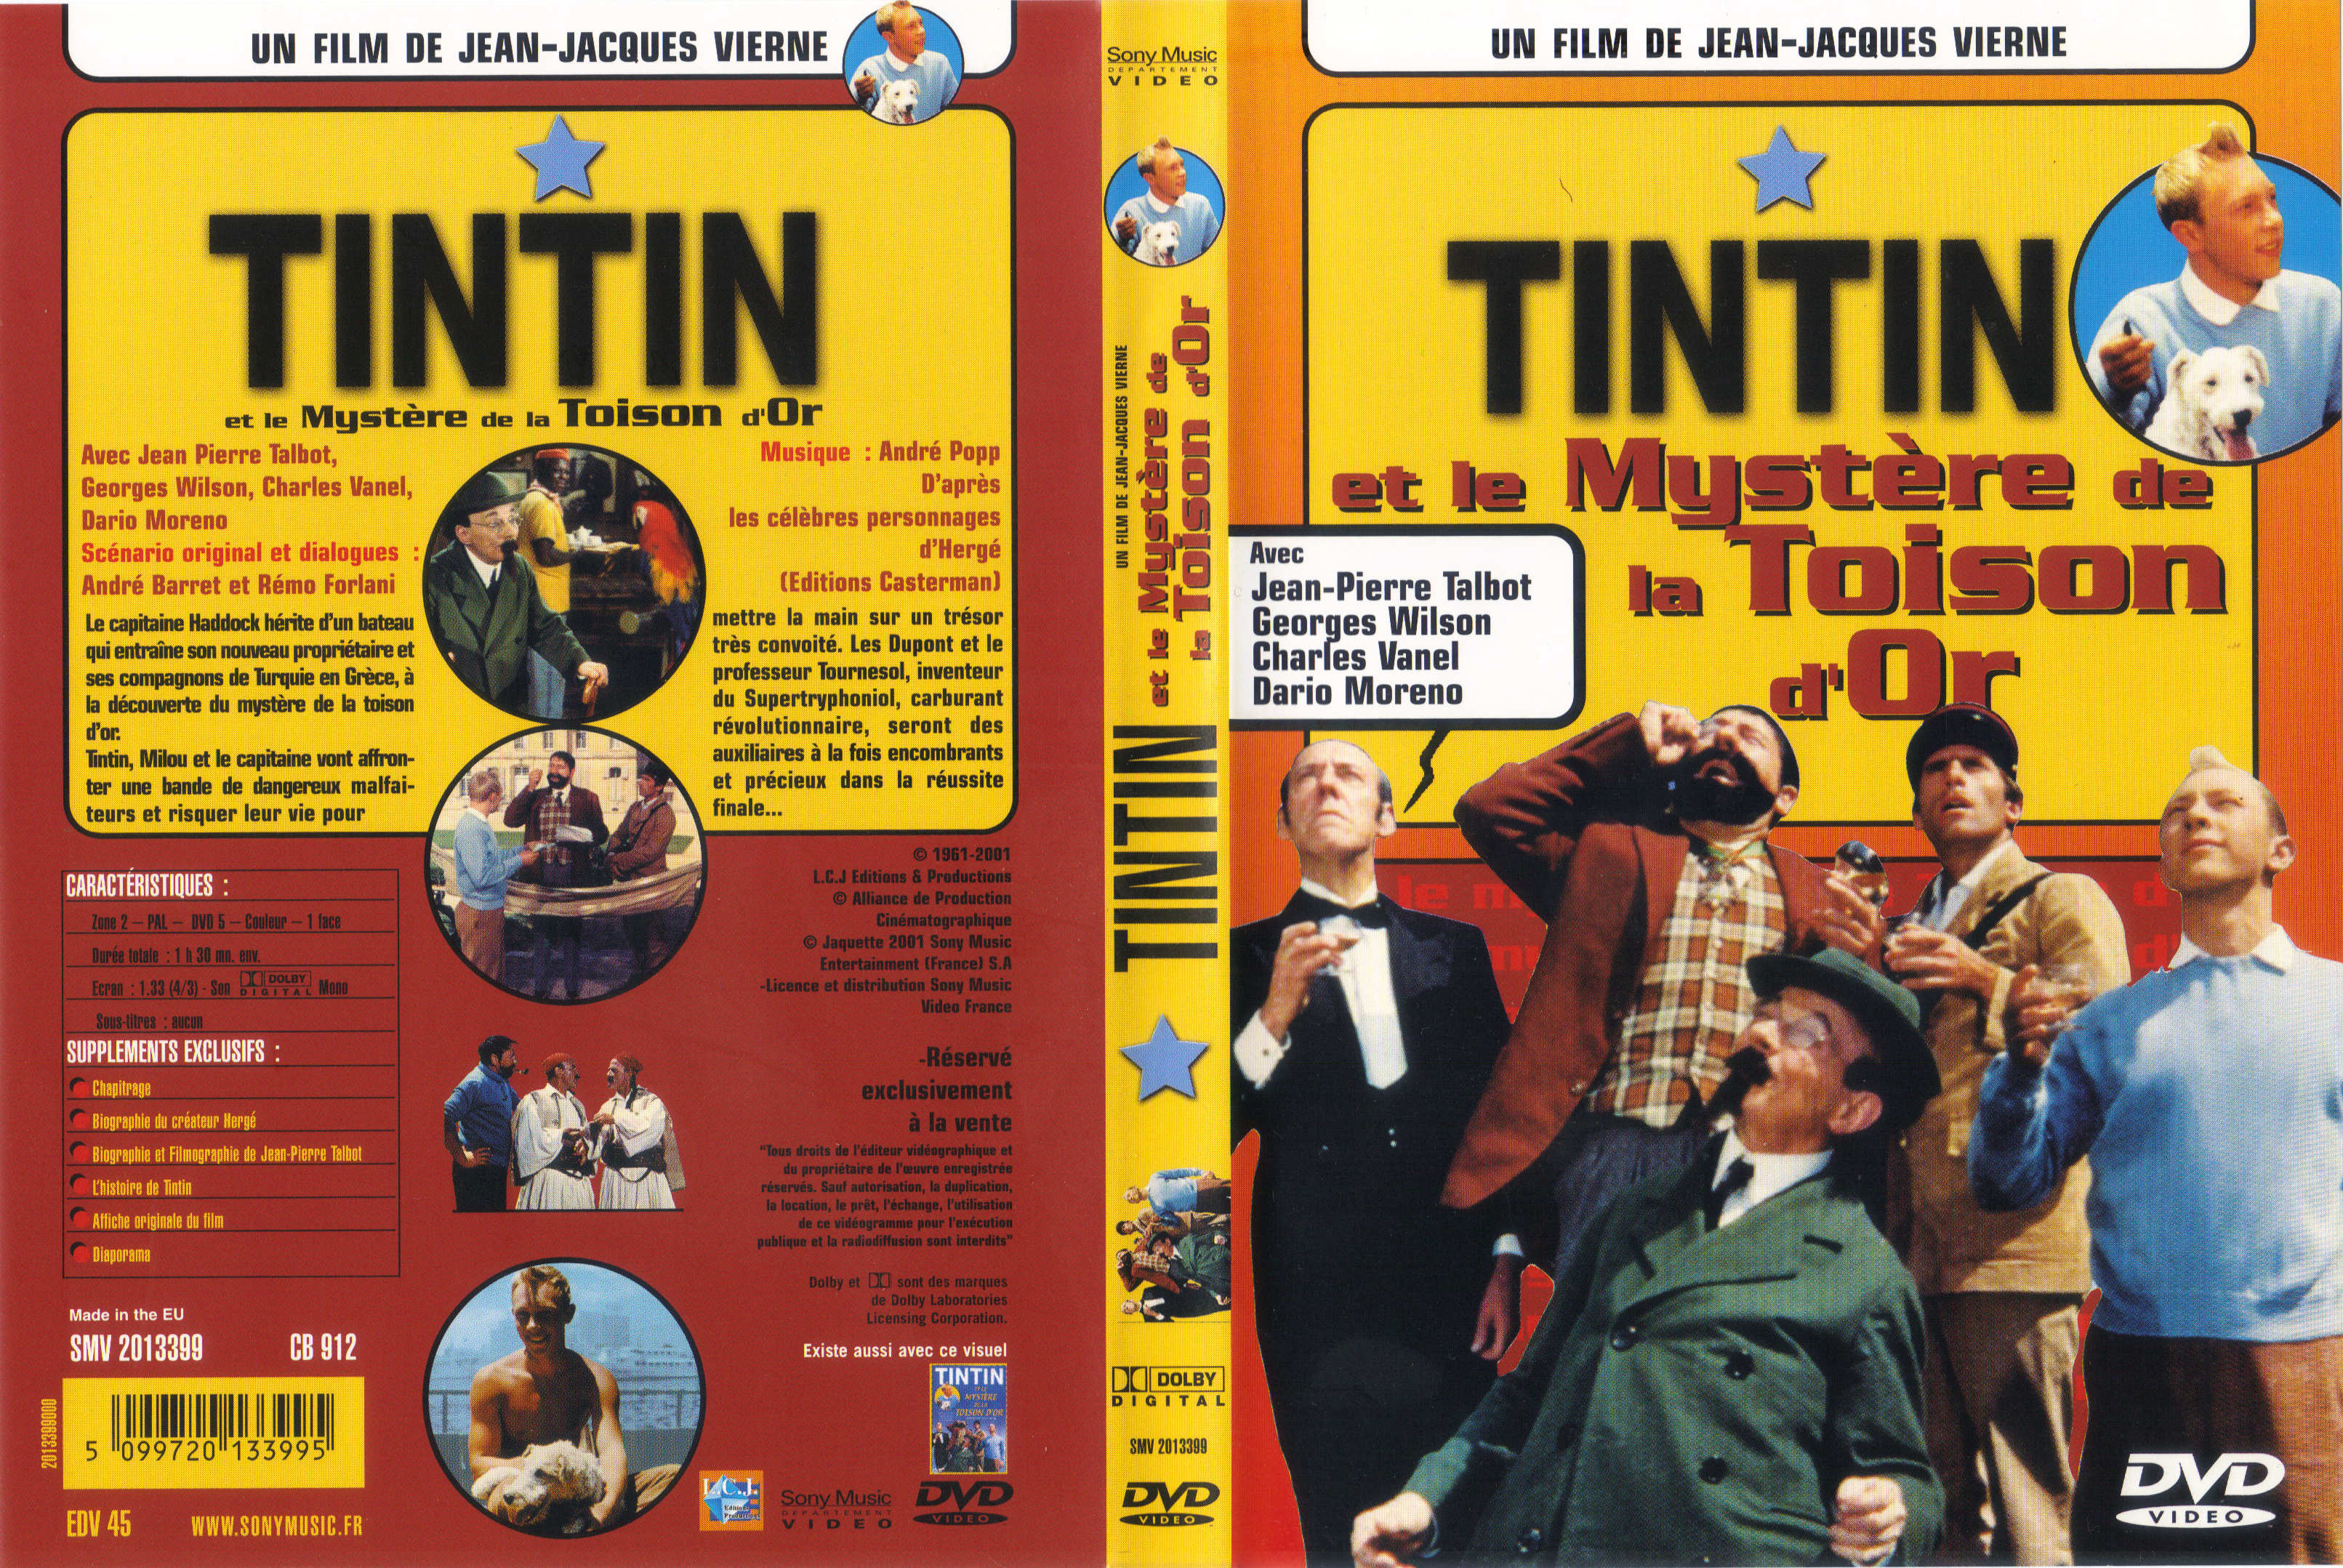 Jaquette DVD Tintin et le mystre de la toison d